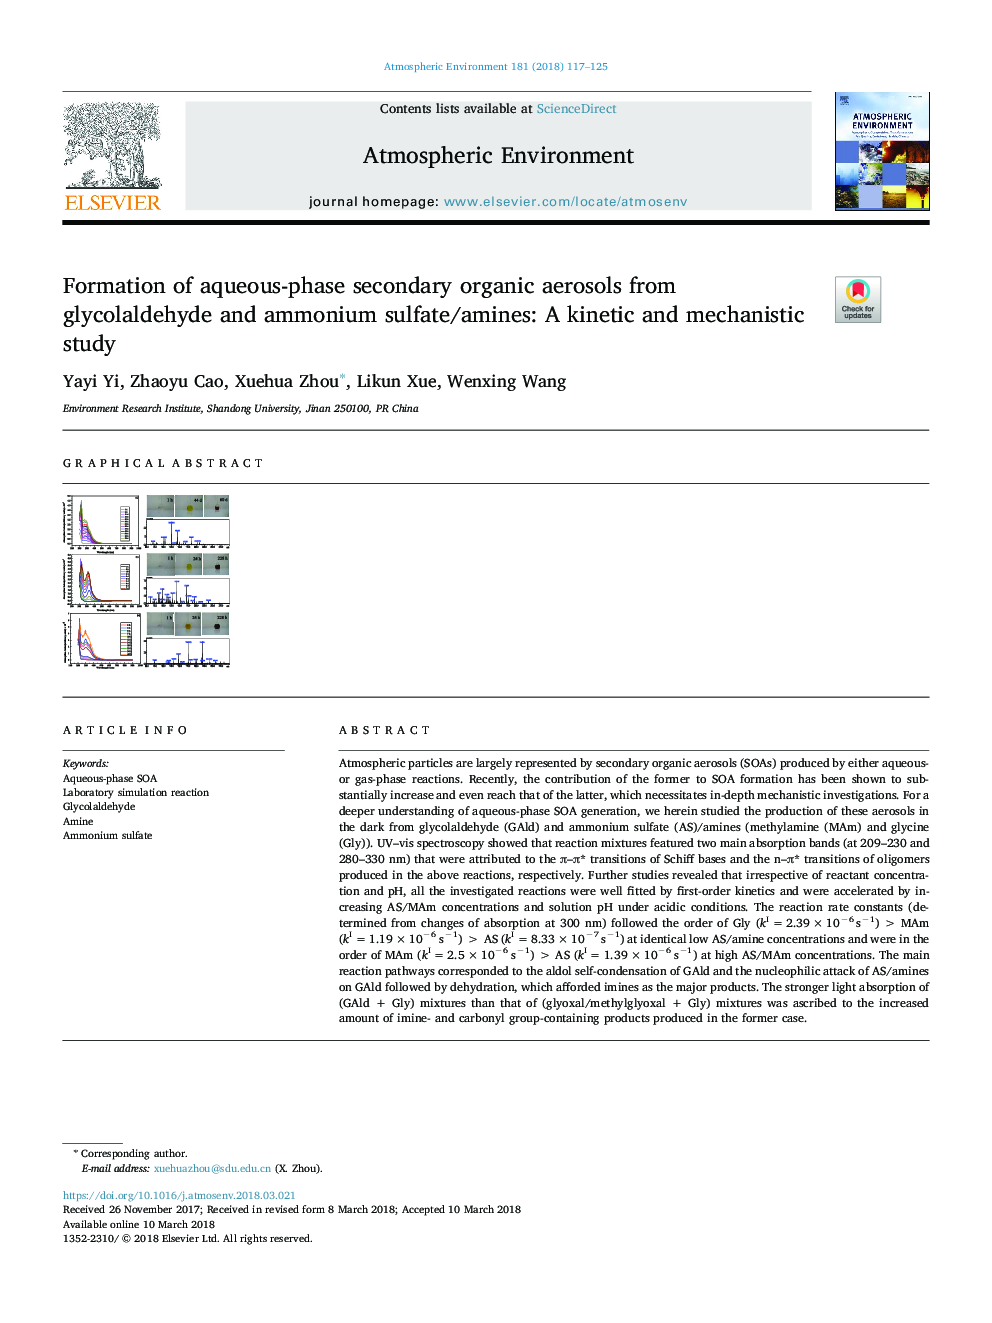 تشکیل فاز آبی فیزیکی آلی از گلول الالئدهی و سولفات آمونیوم / آمین ها: مطالعه سینتیکی و مکانیکی 